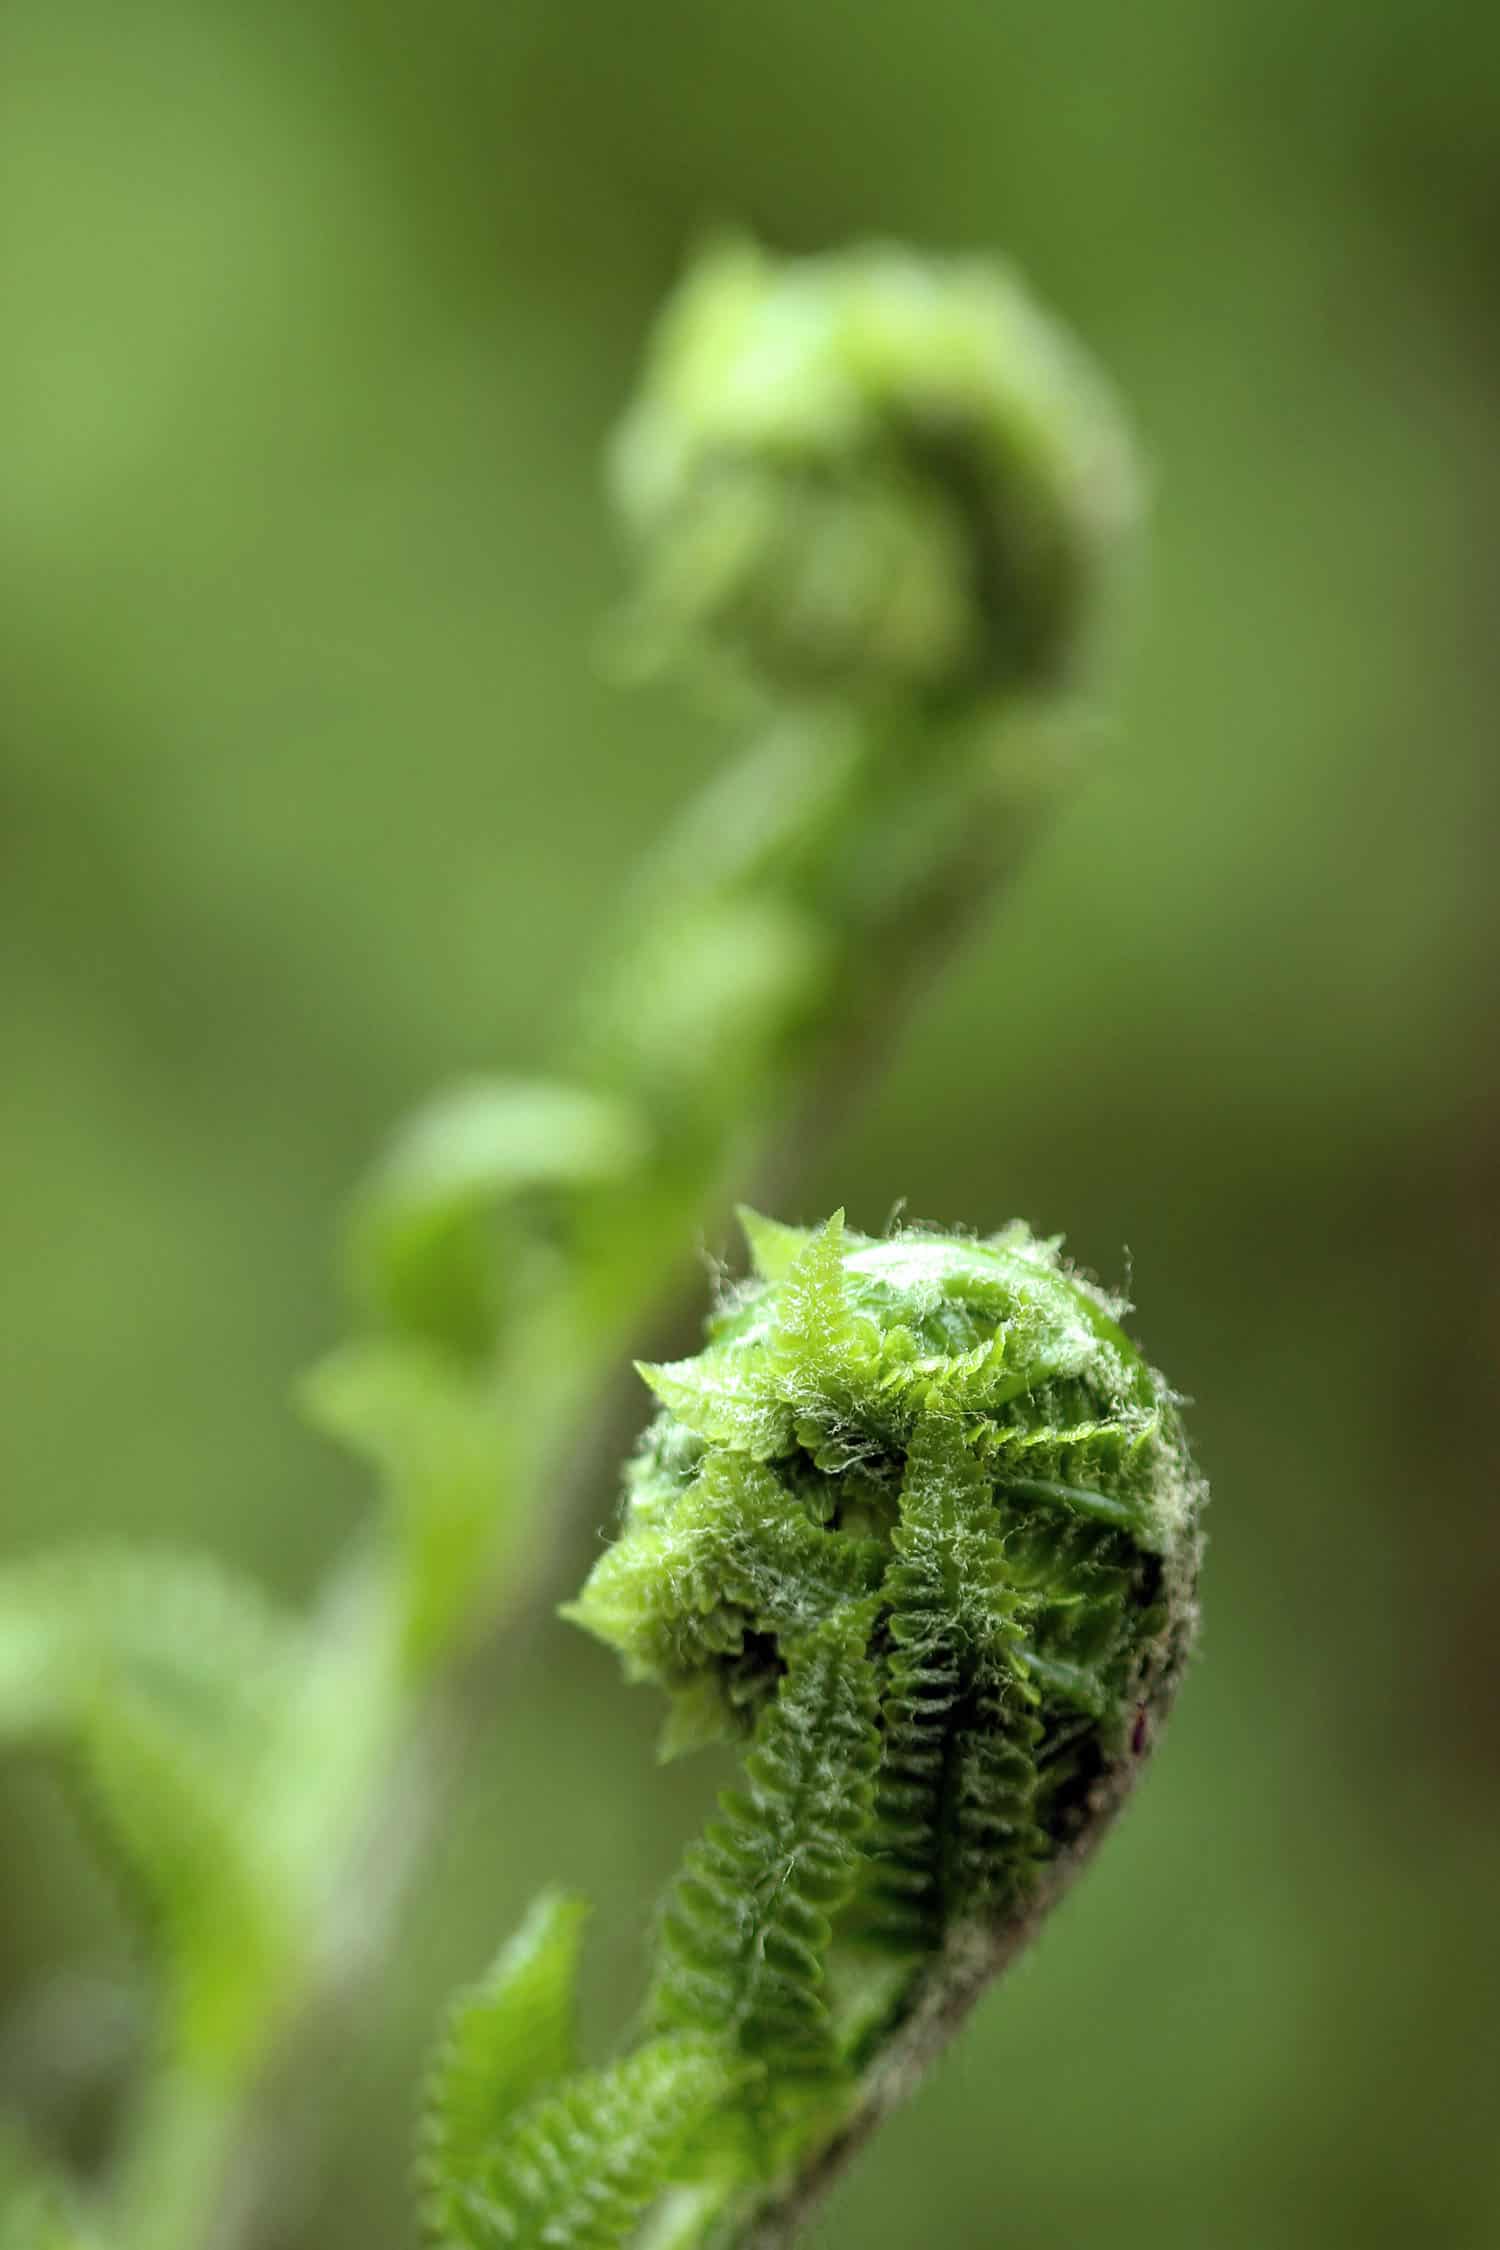 Macro view of a fiddlehead fern